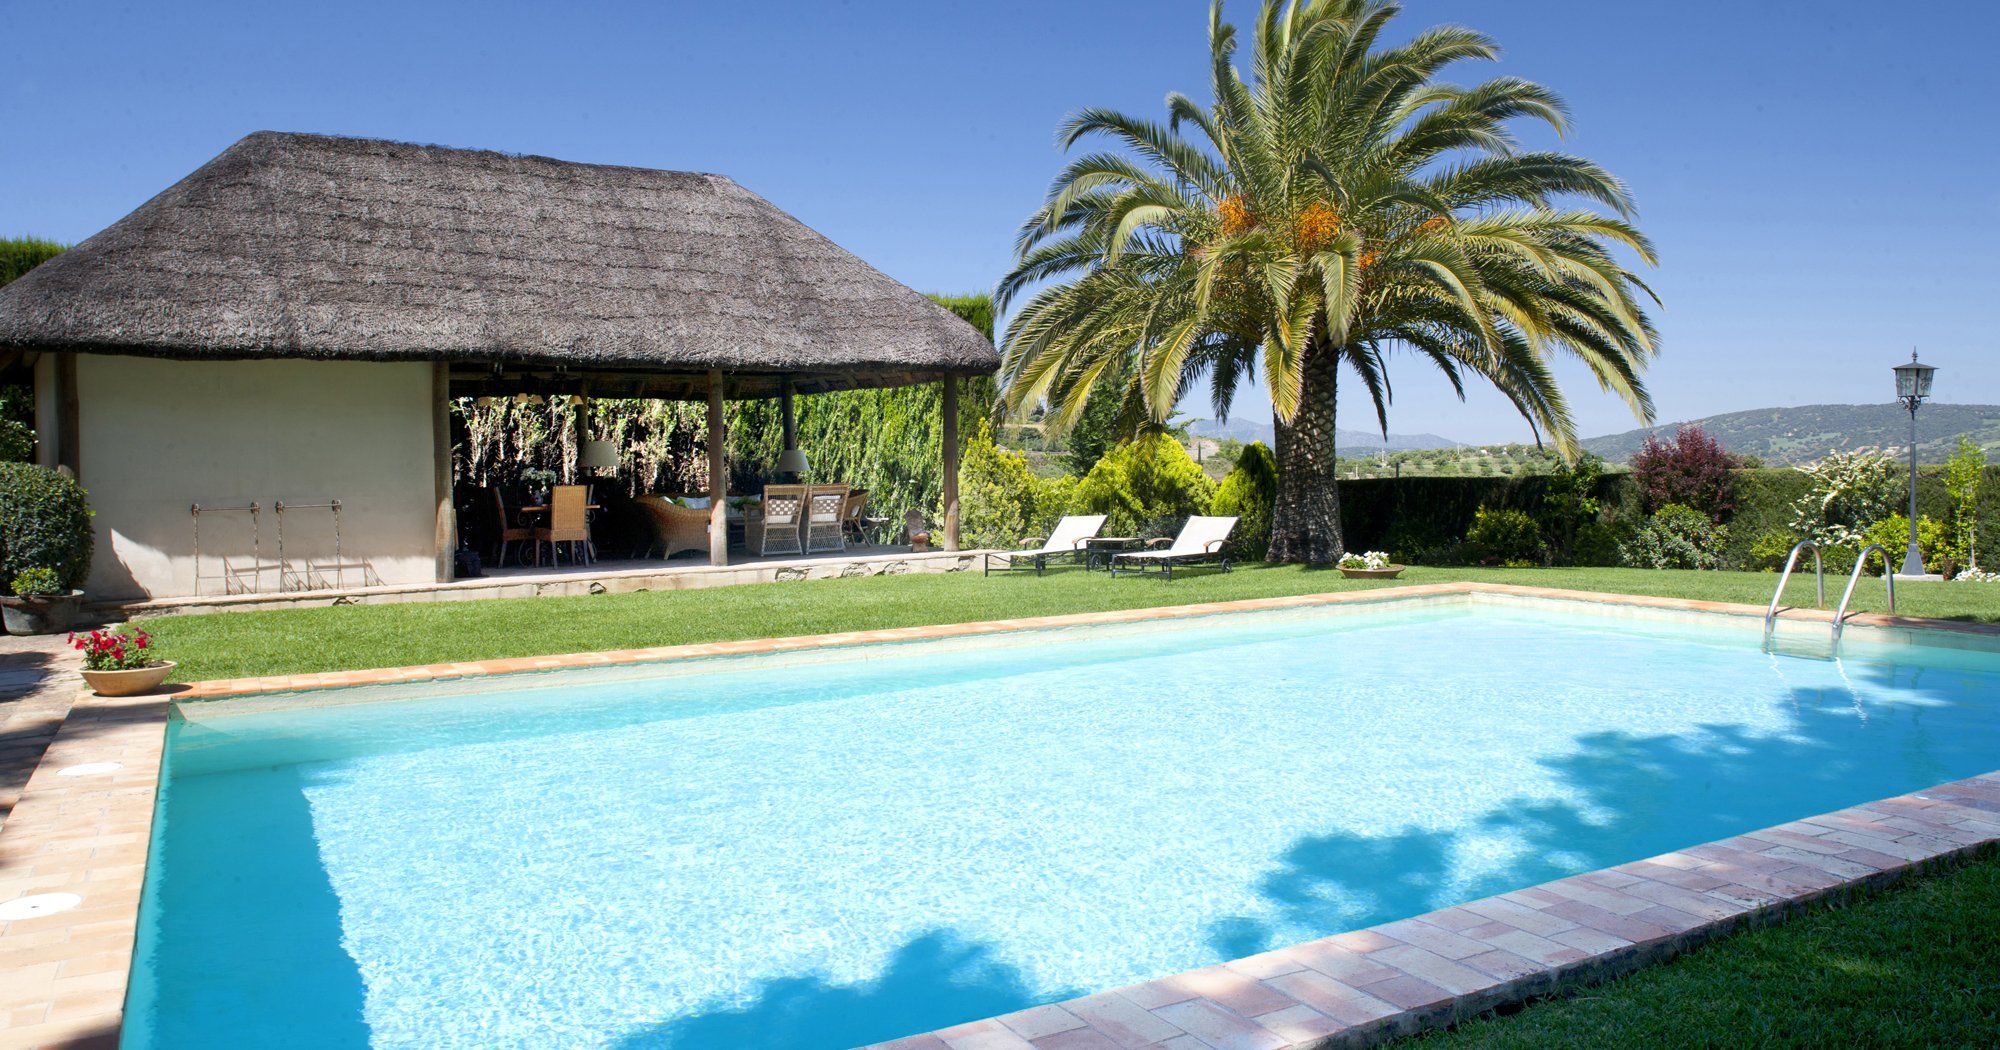 garden and pool villa ronda